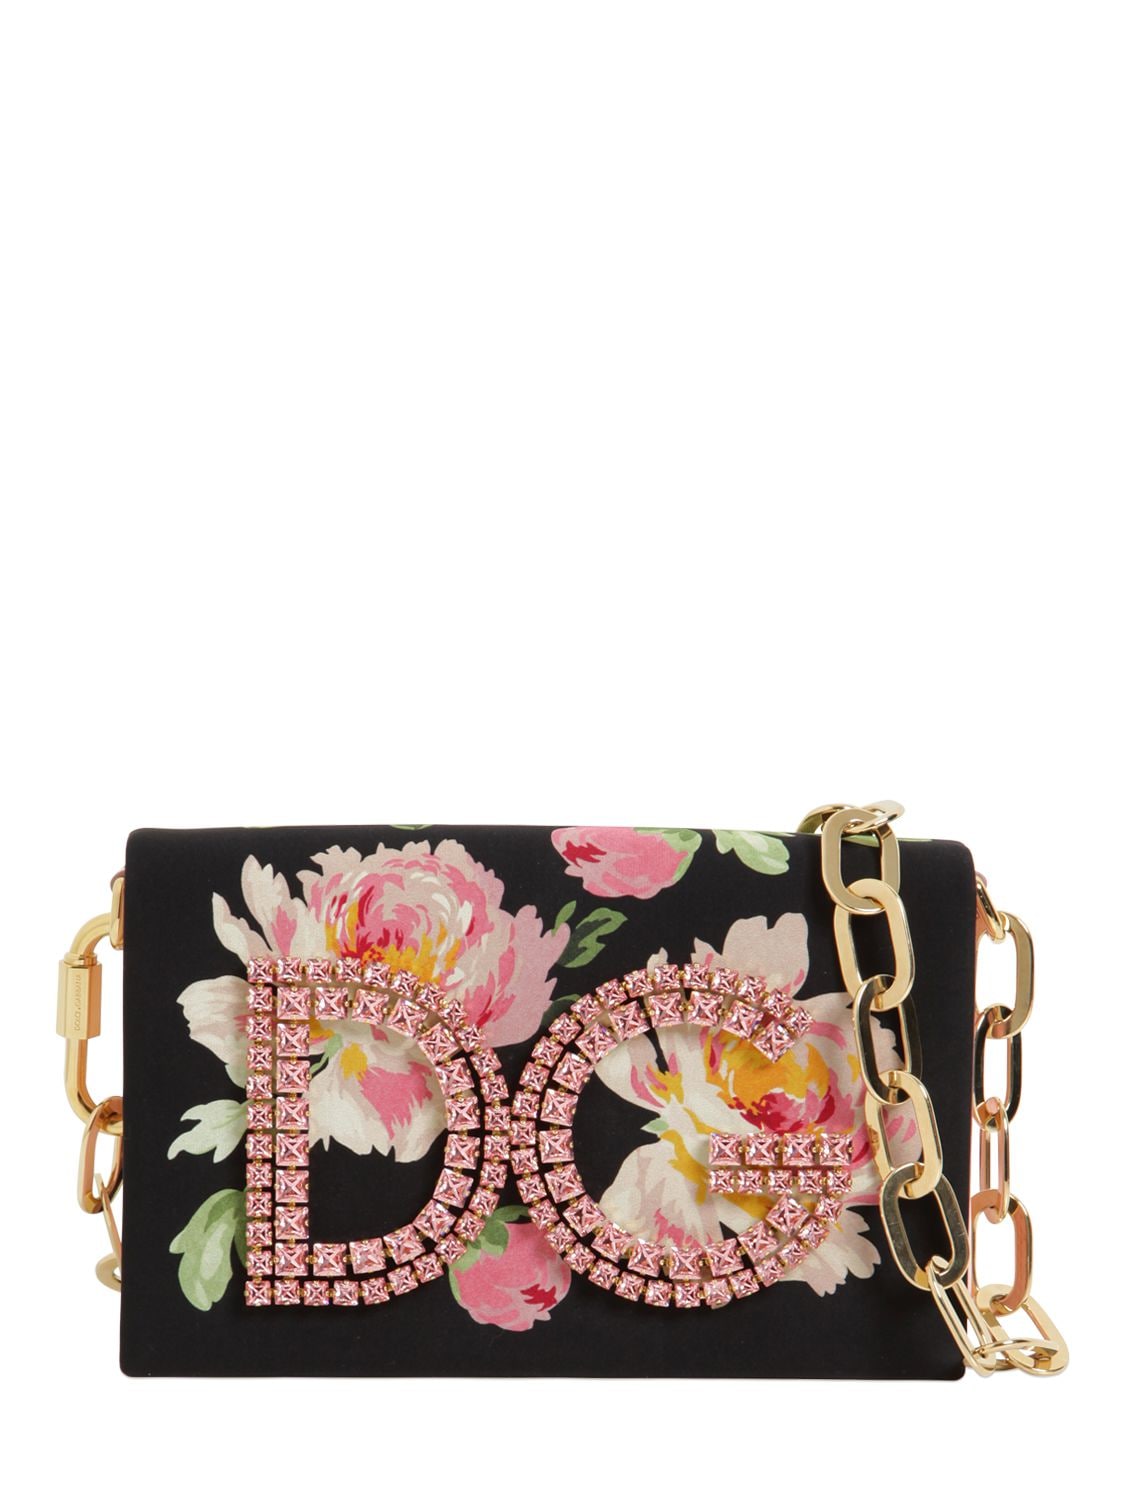 Dolce & Gabbana Dg Girls Floral Print Shoulder Bag In Multicoloured ...